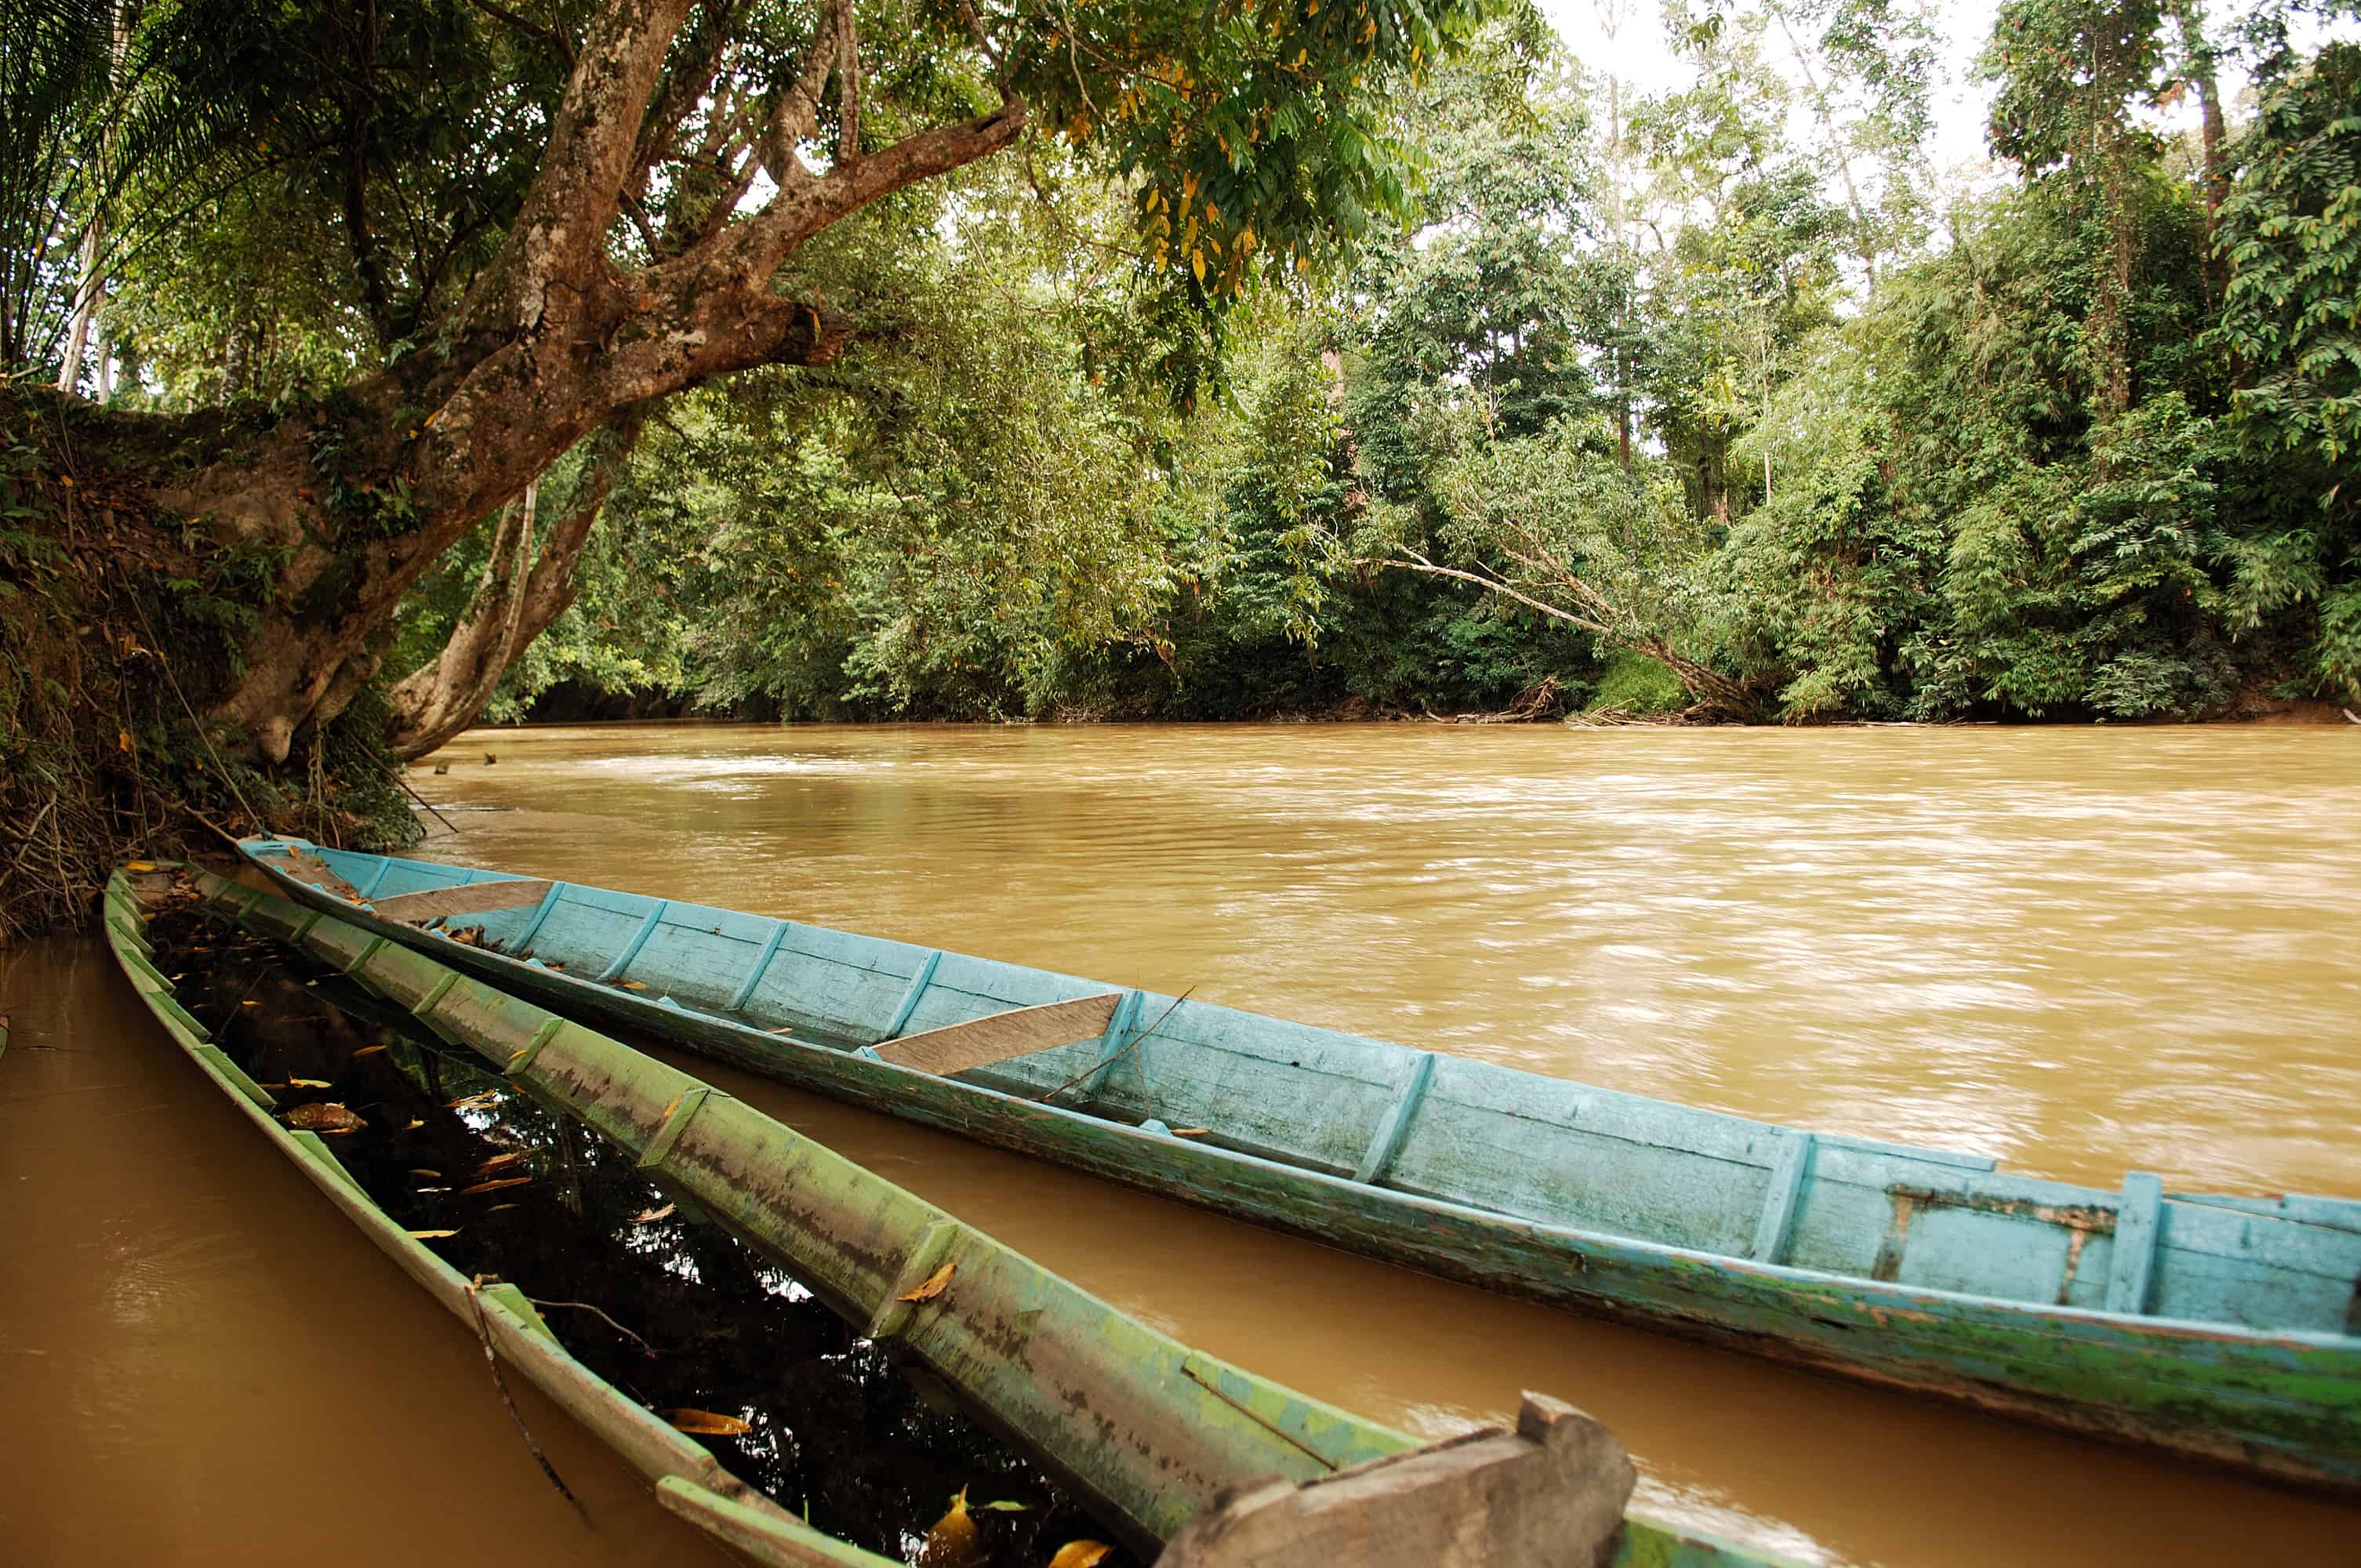 Malaysia, Borneo, Sarawak: Boat in the Jungle